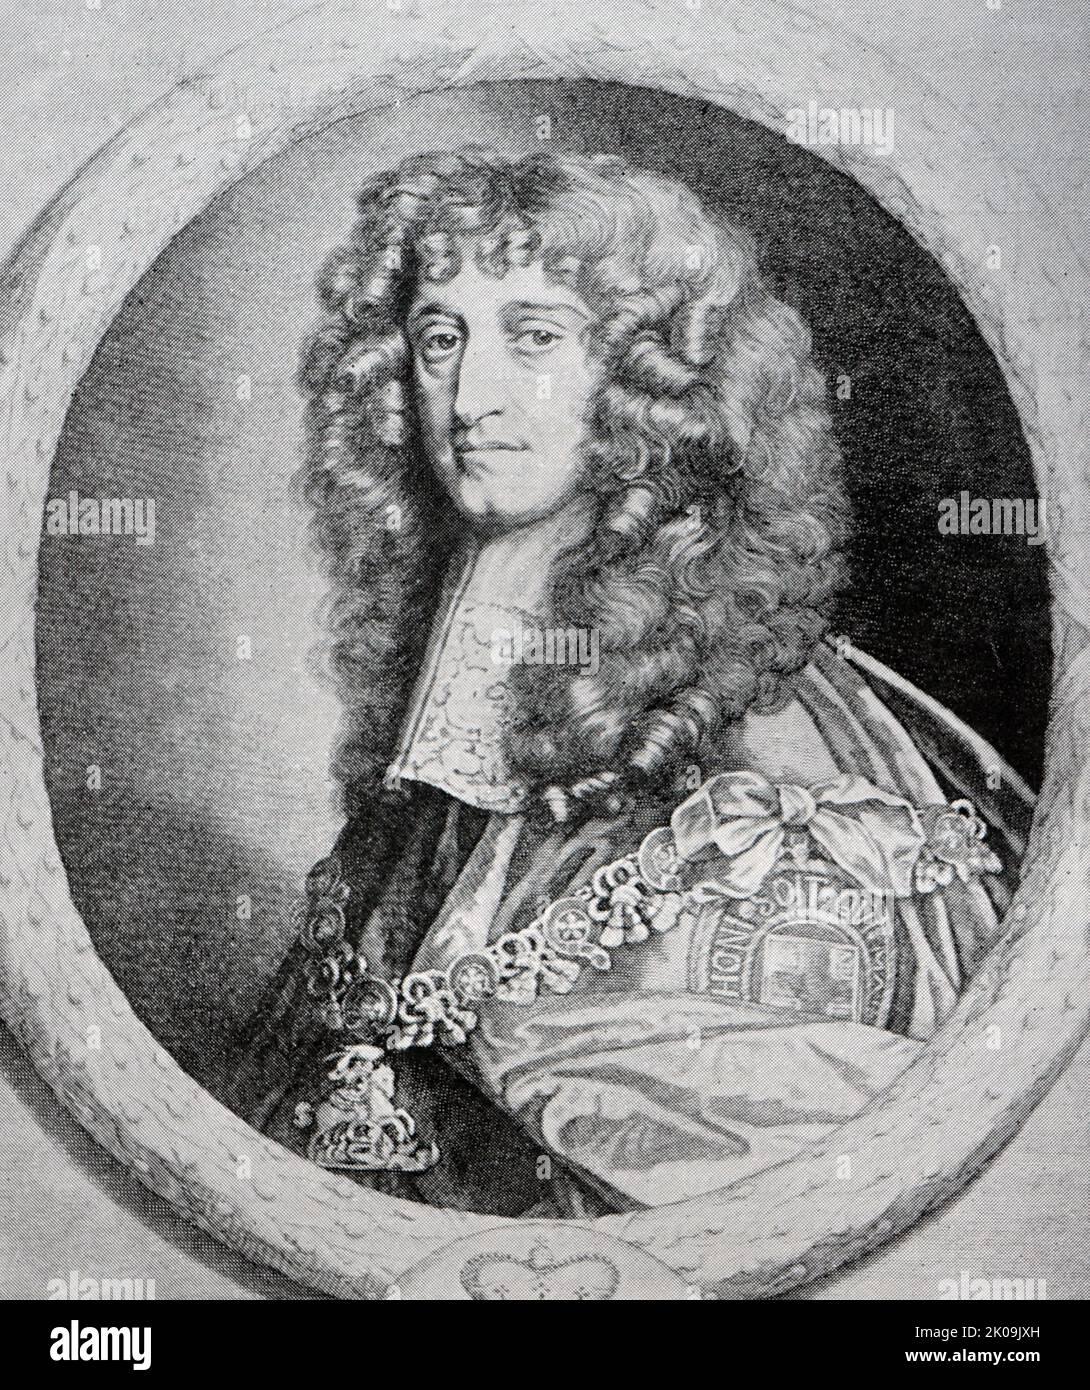 Prinz Rupert vom Rhein, Herzog von Cumberland, KG, PC, FRS (17. Dezember 1619 - 29. November 1682) war ein deutsch-englischer Armeeoffizier, Admiral, Wissenschaftler und Kolonialgouverneur. Während des englischen Bürgerkrieges kam er erstmals als Royalist-Kavalleriekommandeur zur Berühmtheit. Stockfoto